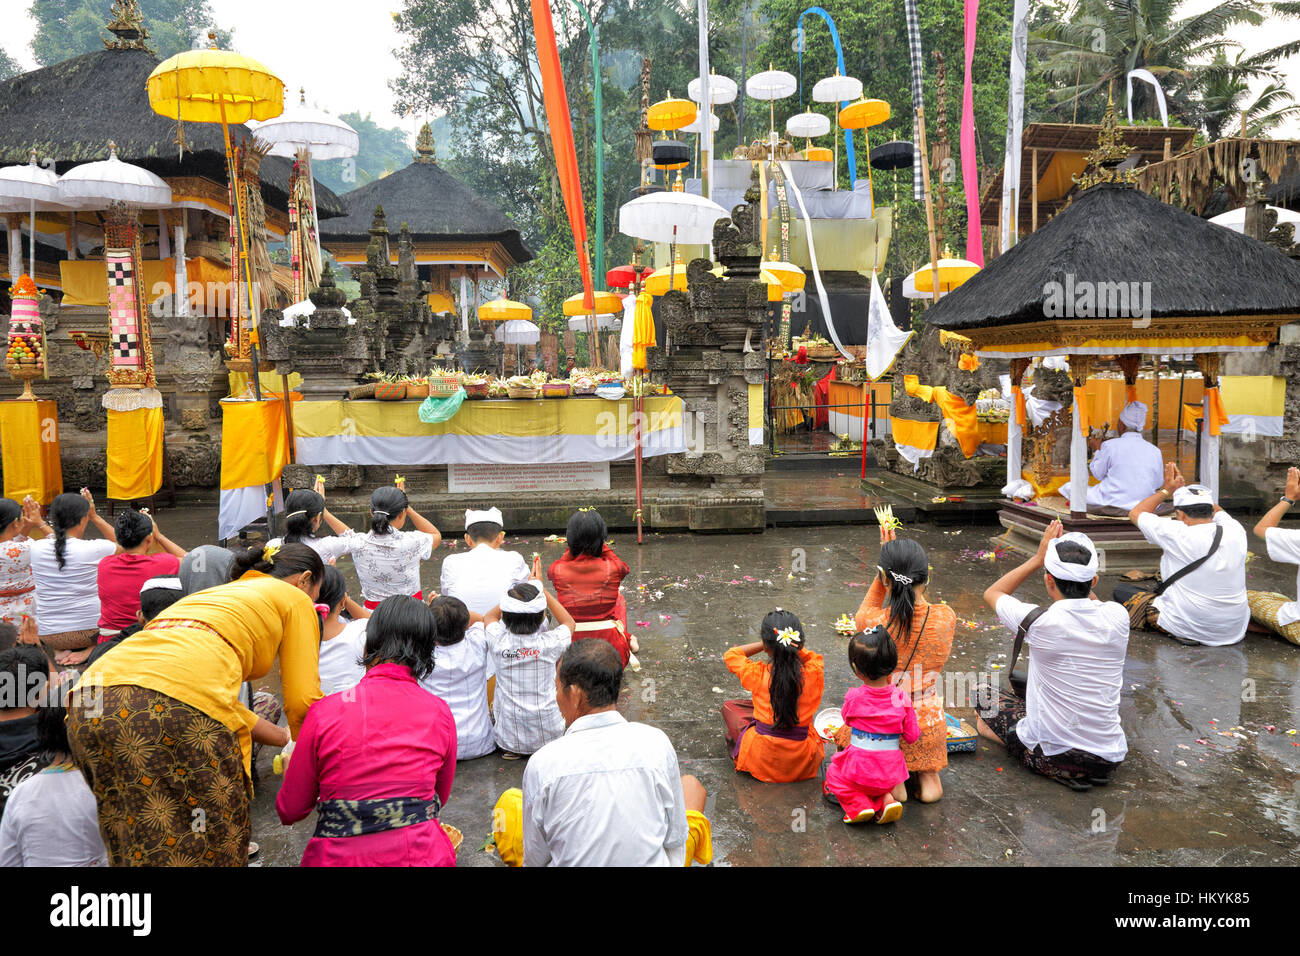 TAMPAK SIRING, Bali, Indonesia - 30 ottobre: persone in preghiera al santo acqua sorgiva tempio Puru Tirtha Empul durante la cerimonia religiosa il 30 ottobre Foto Stock